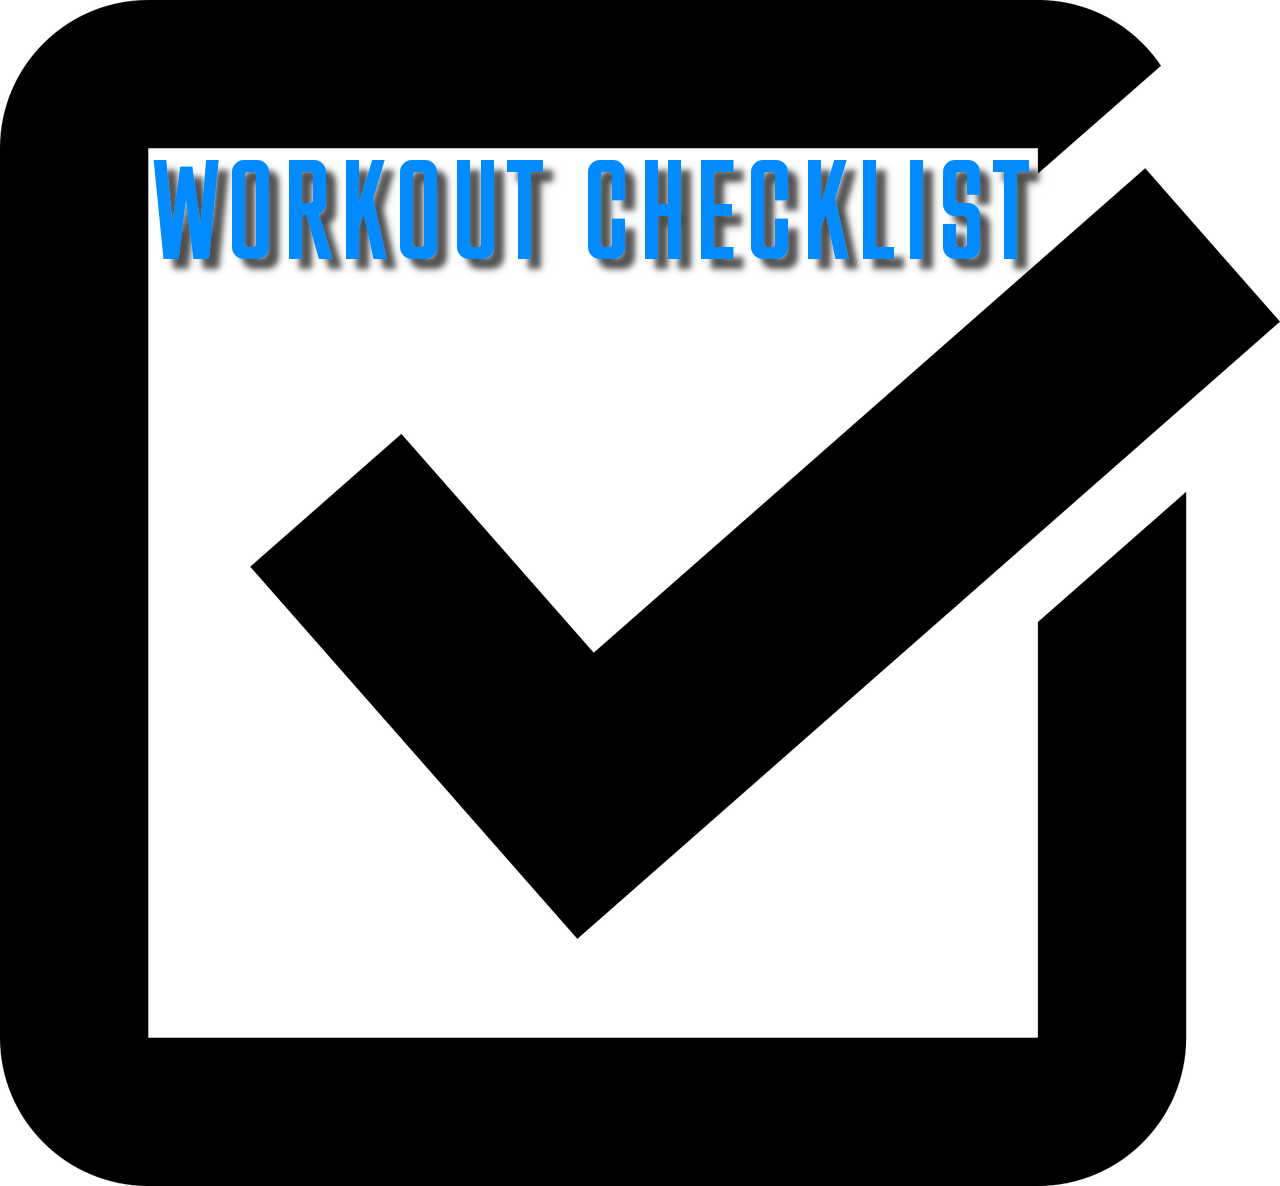 Workout Checklist